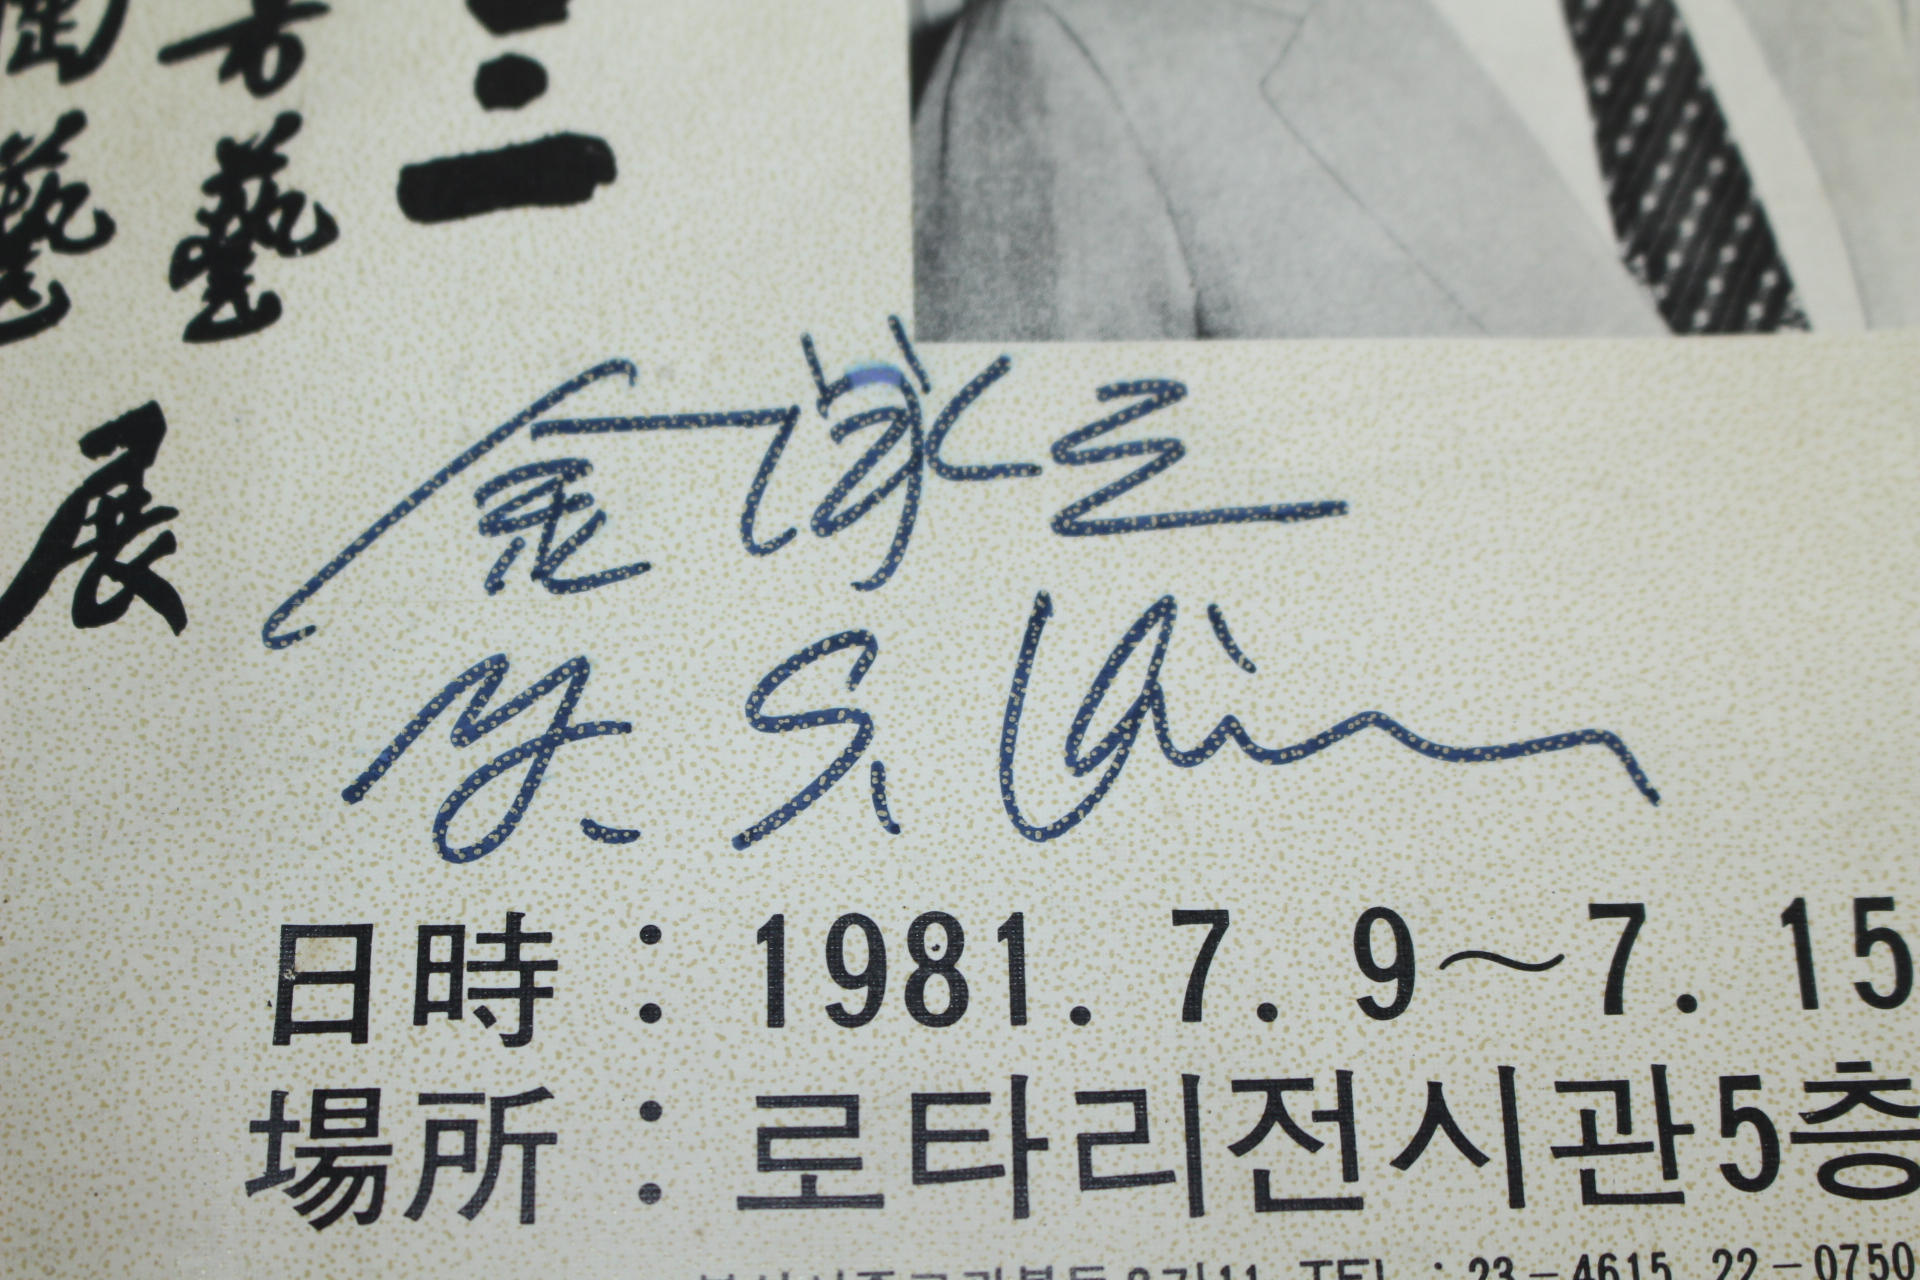 1981년 거산 김영삼(金泳三) 서예.도예전 도록(서명 및 자유,정의,진리 친필글수록)